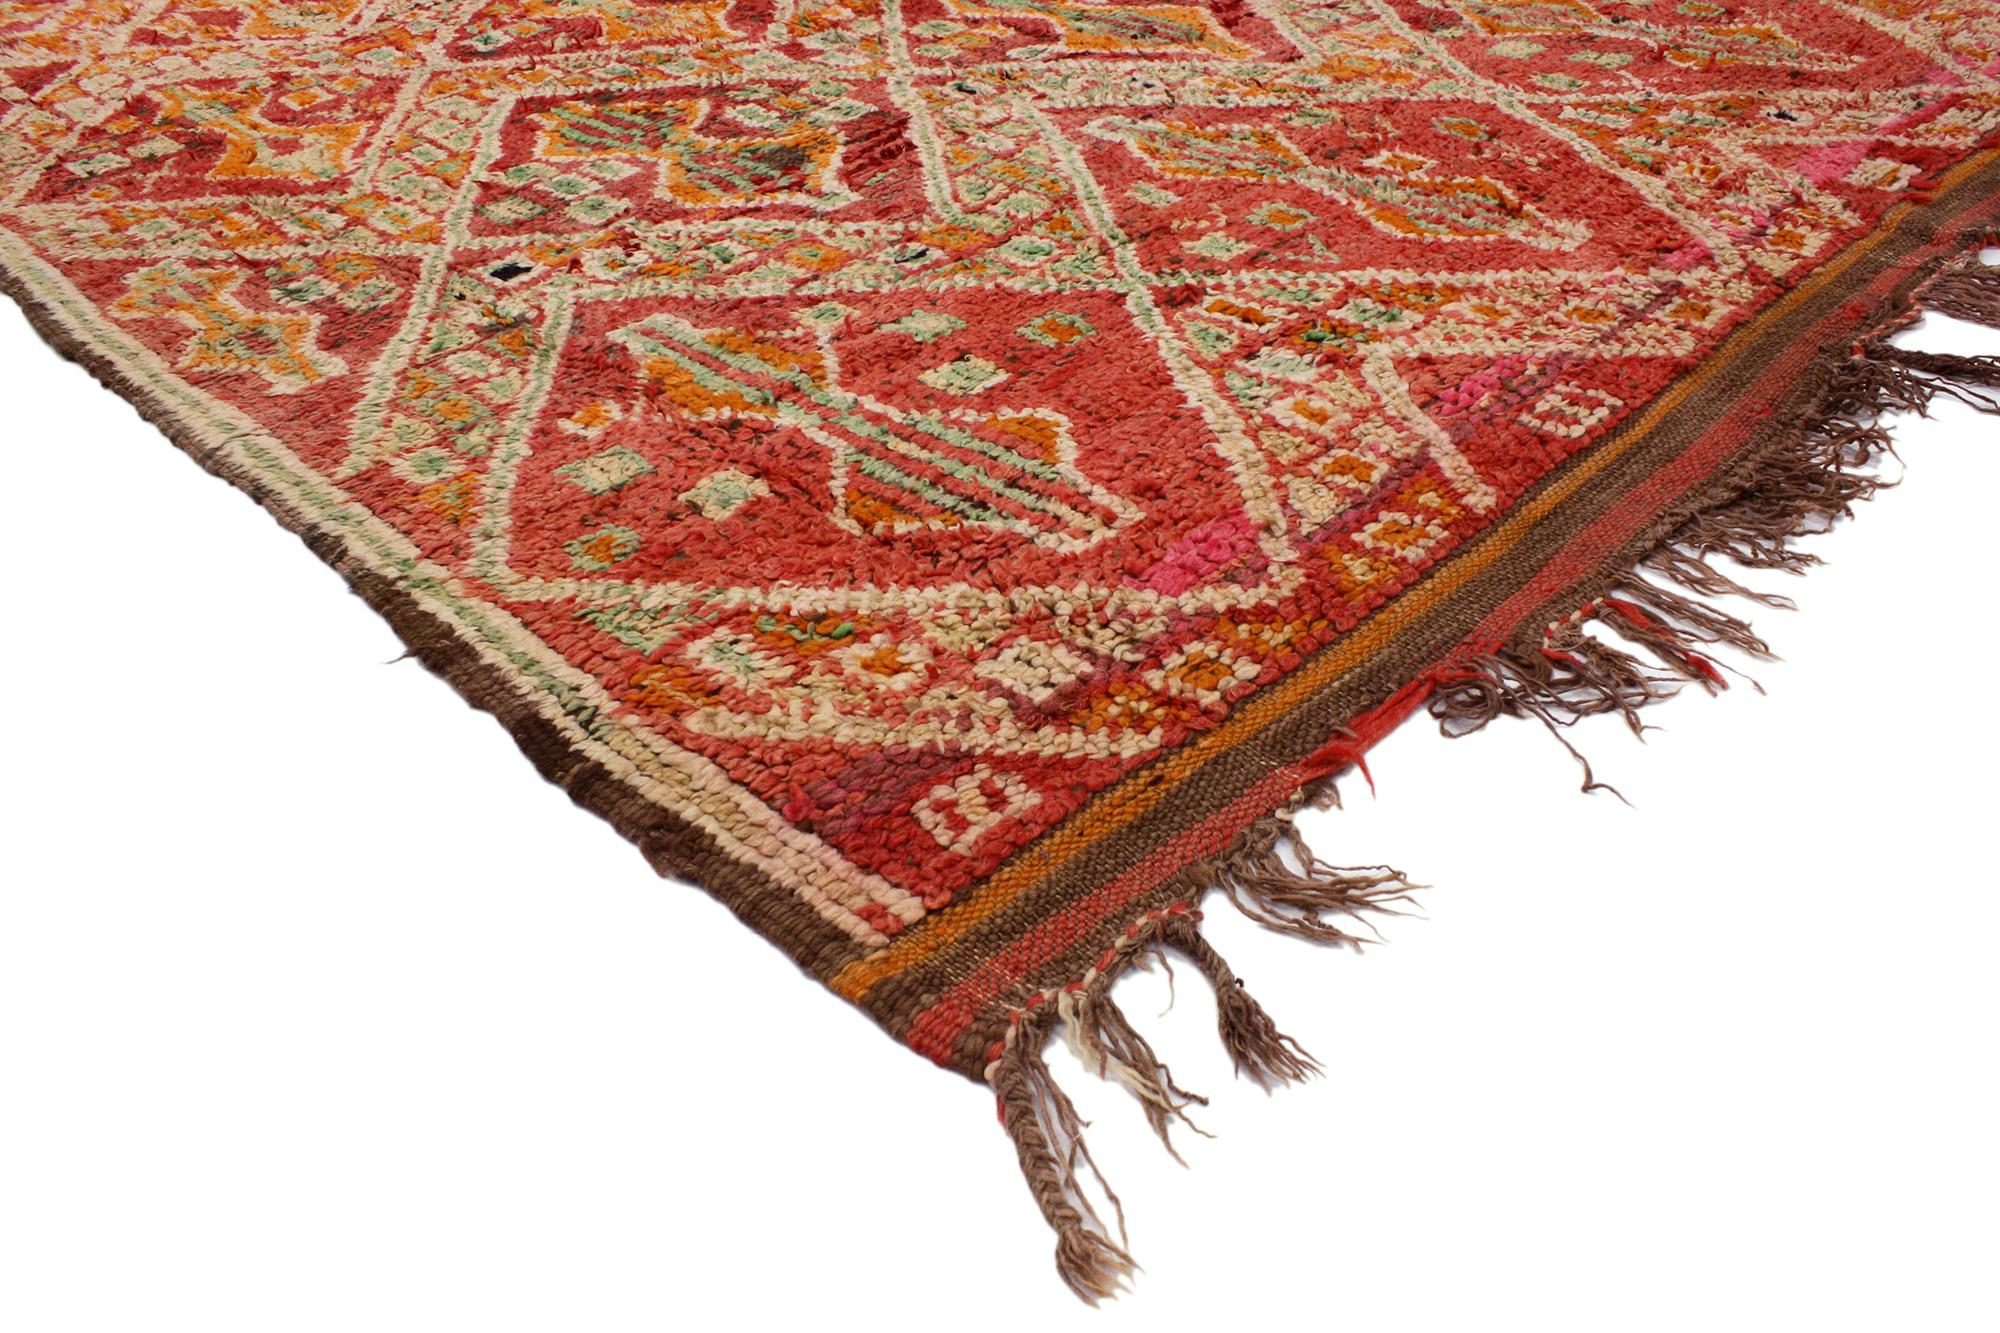 20262 Tapis marocain Beni MGuild rouge vintage, 05'11 x 08'04. Les tapis Beni M'Guild, originaires de la tribu Beni M'Guild nichée dans le Moyen Atlas marocain, représentent une tradition profondément ancrée dans la culture berbère. Fabriqués par